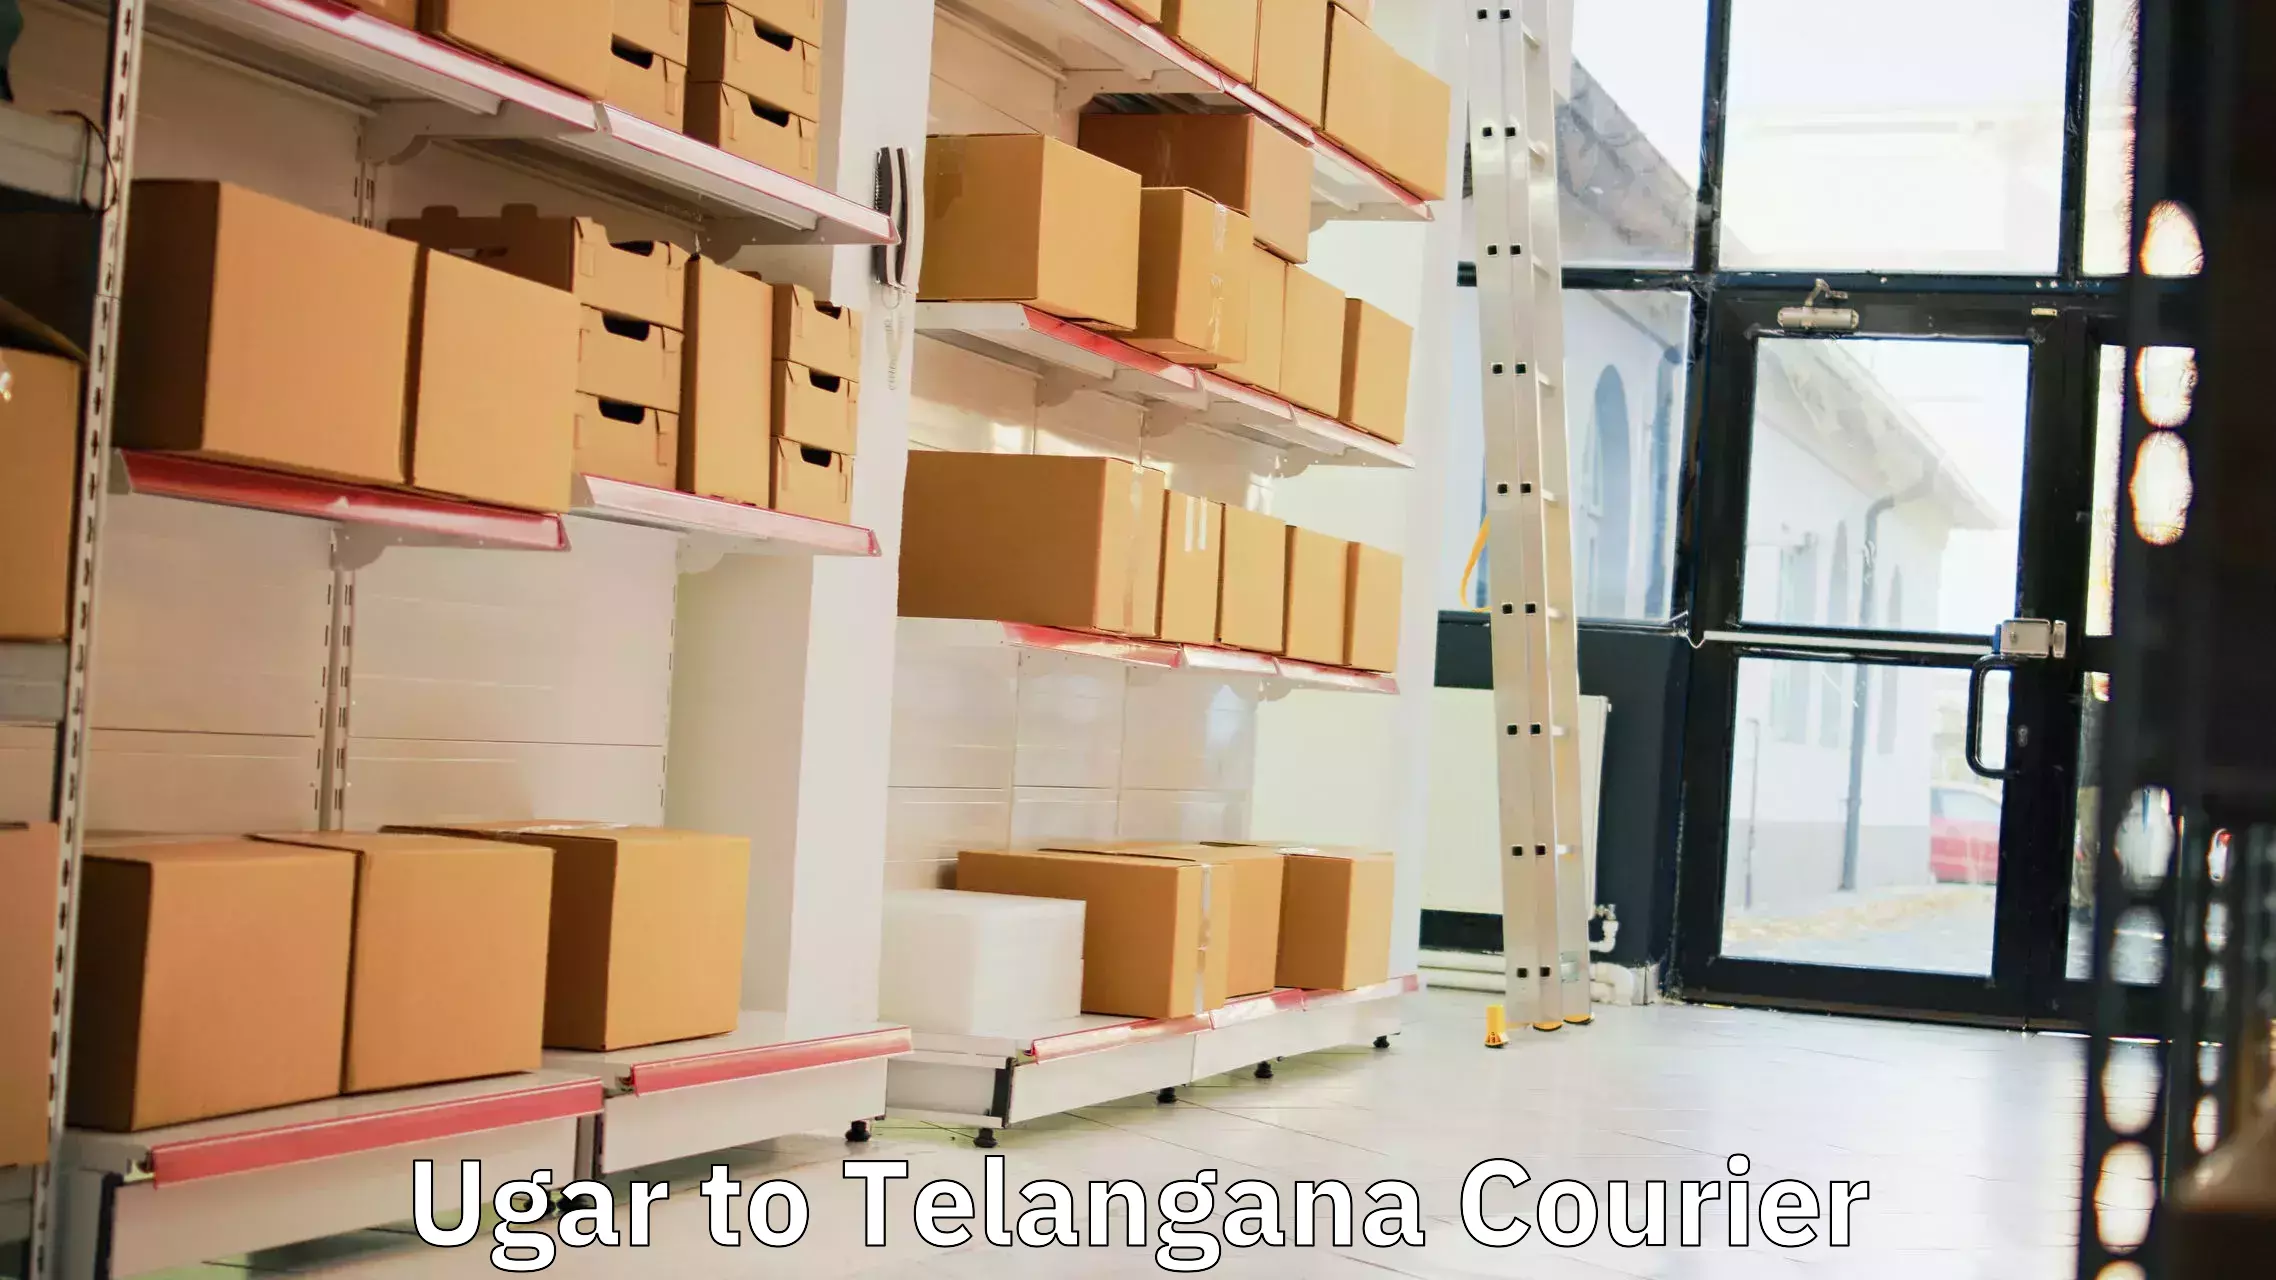 Efficient shipping operations Ugar to Telangana